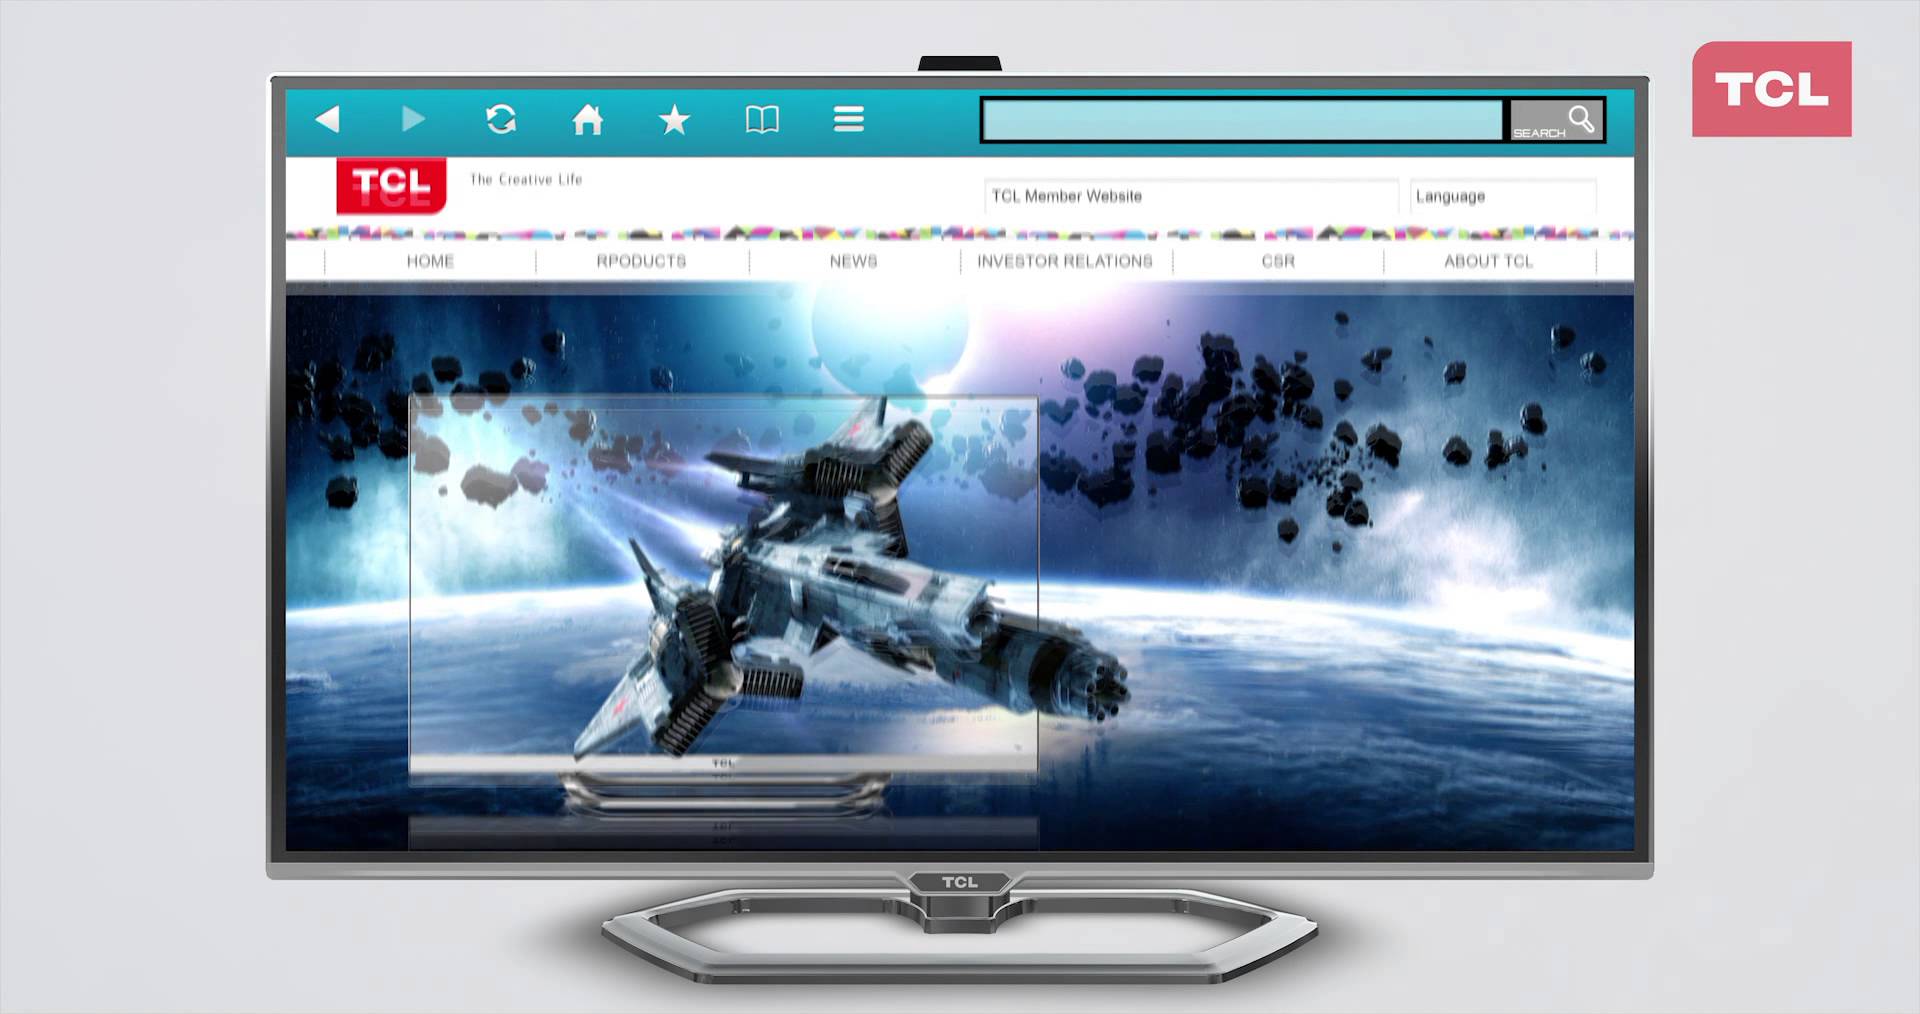 Hướng Dẫn Dò Kênh Trên Smart Tivi TCL - Mua Sắm Điện Máy Giá Rẻ Tại Thế Giới Điện Máy Online